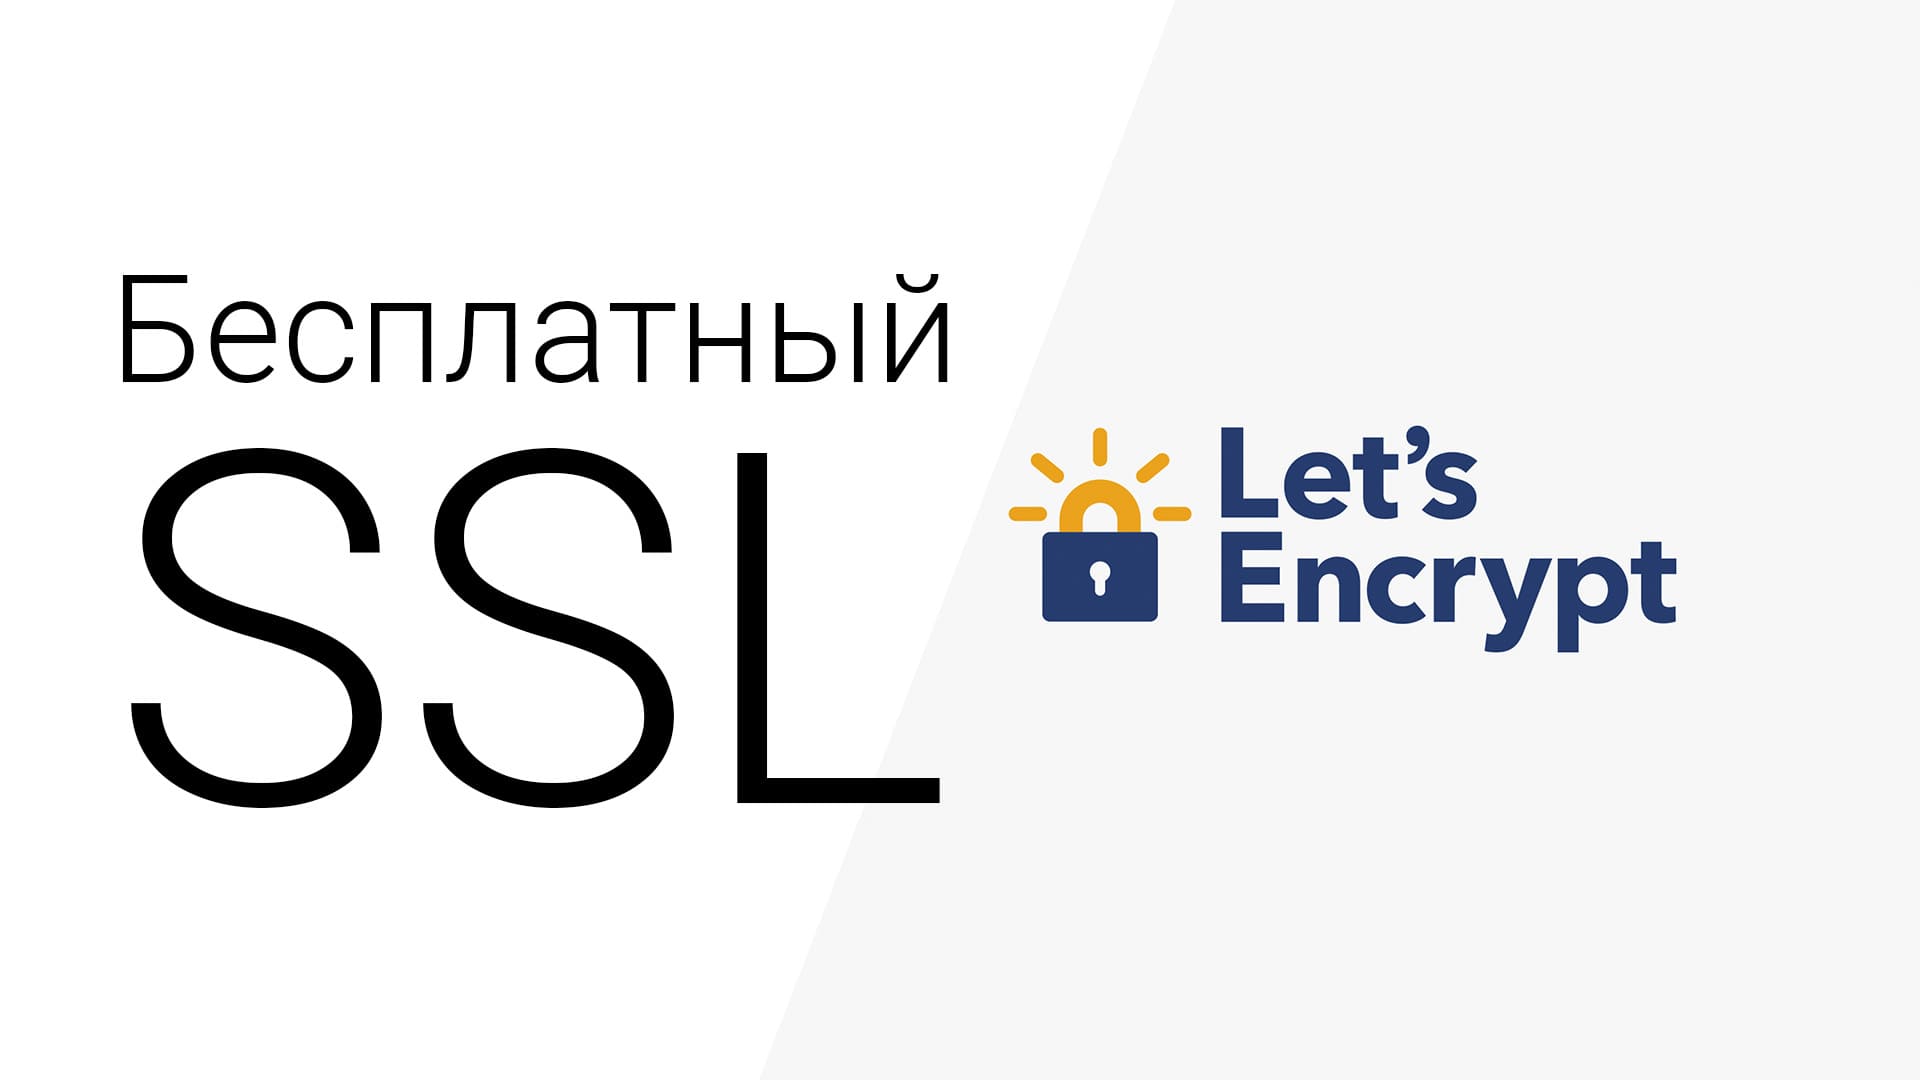 Бесплатный ssl от Let's Encrypt